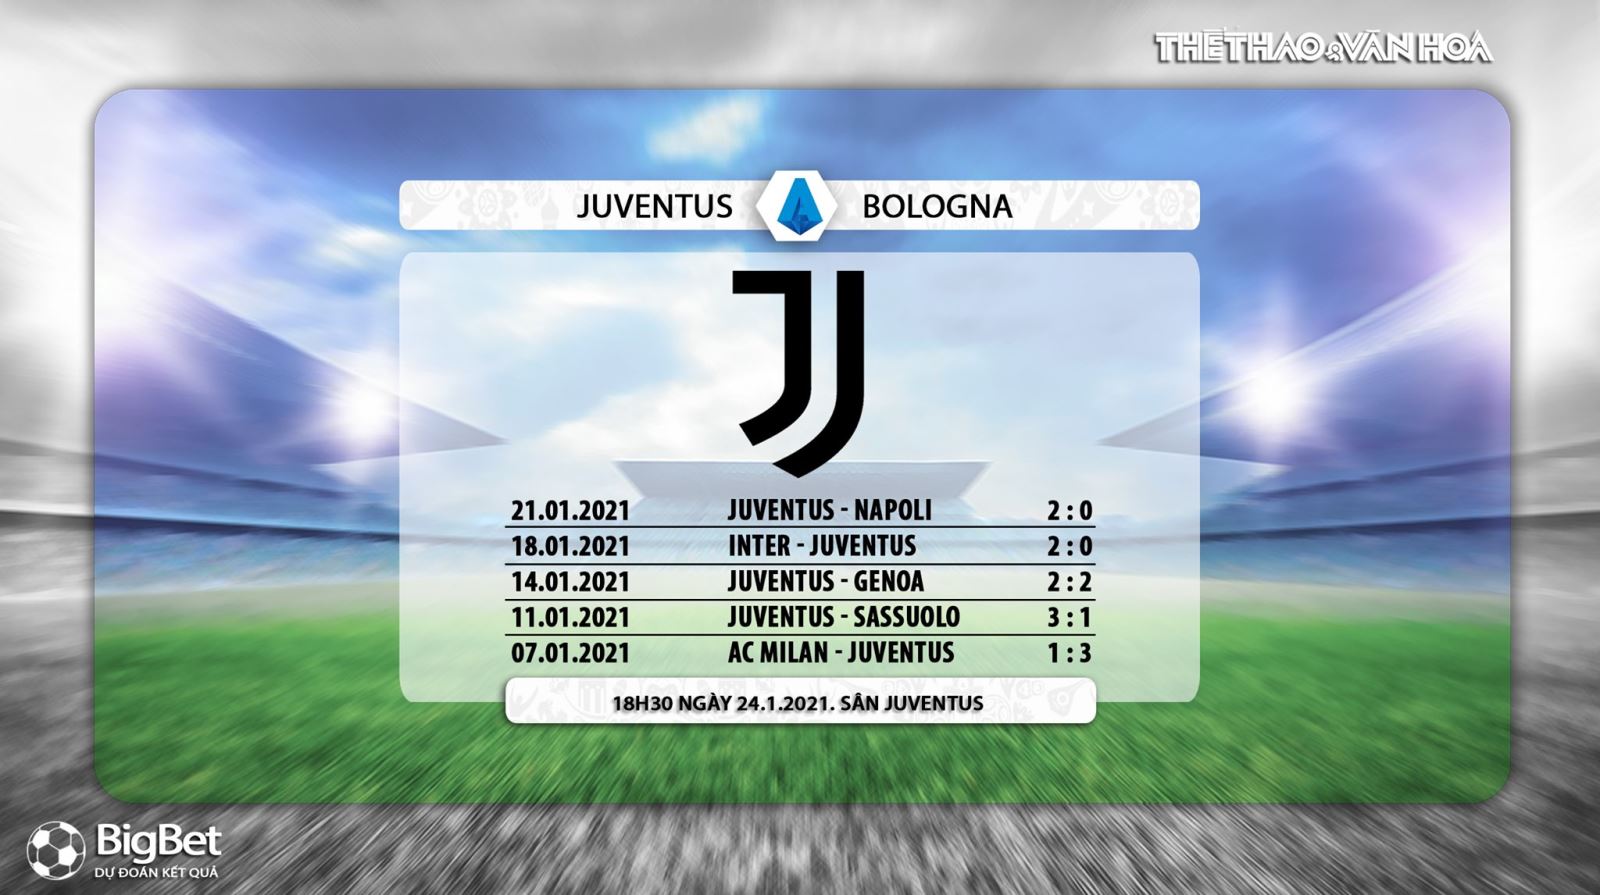 Trực tiếp bóng đá Ý hôm nay: Juventus vs Bologna. FPT Play trực tiếp Juventus